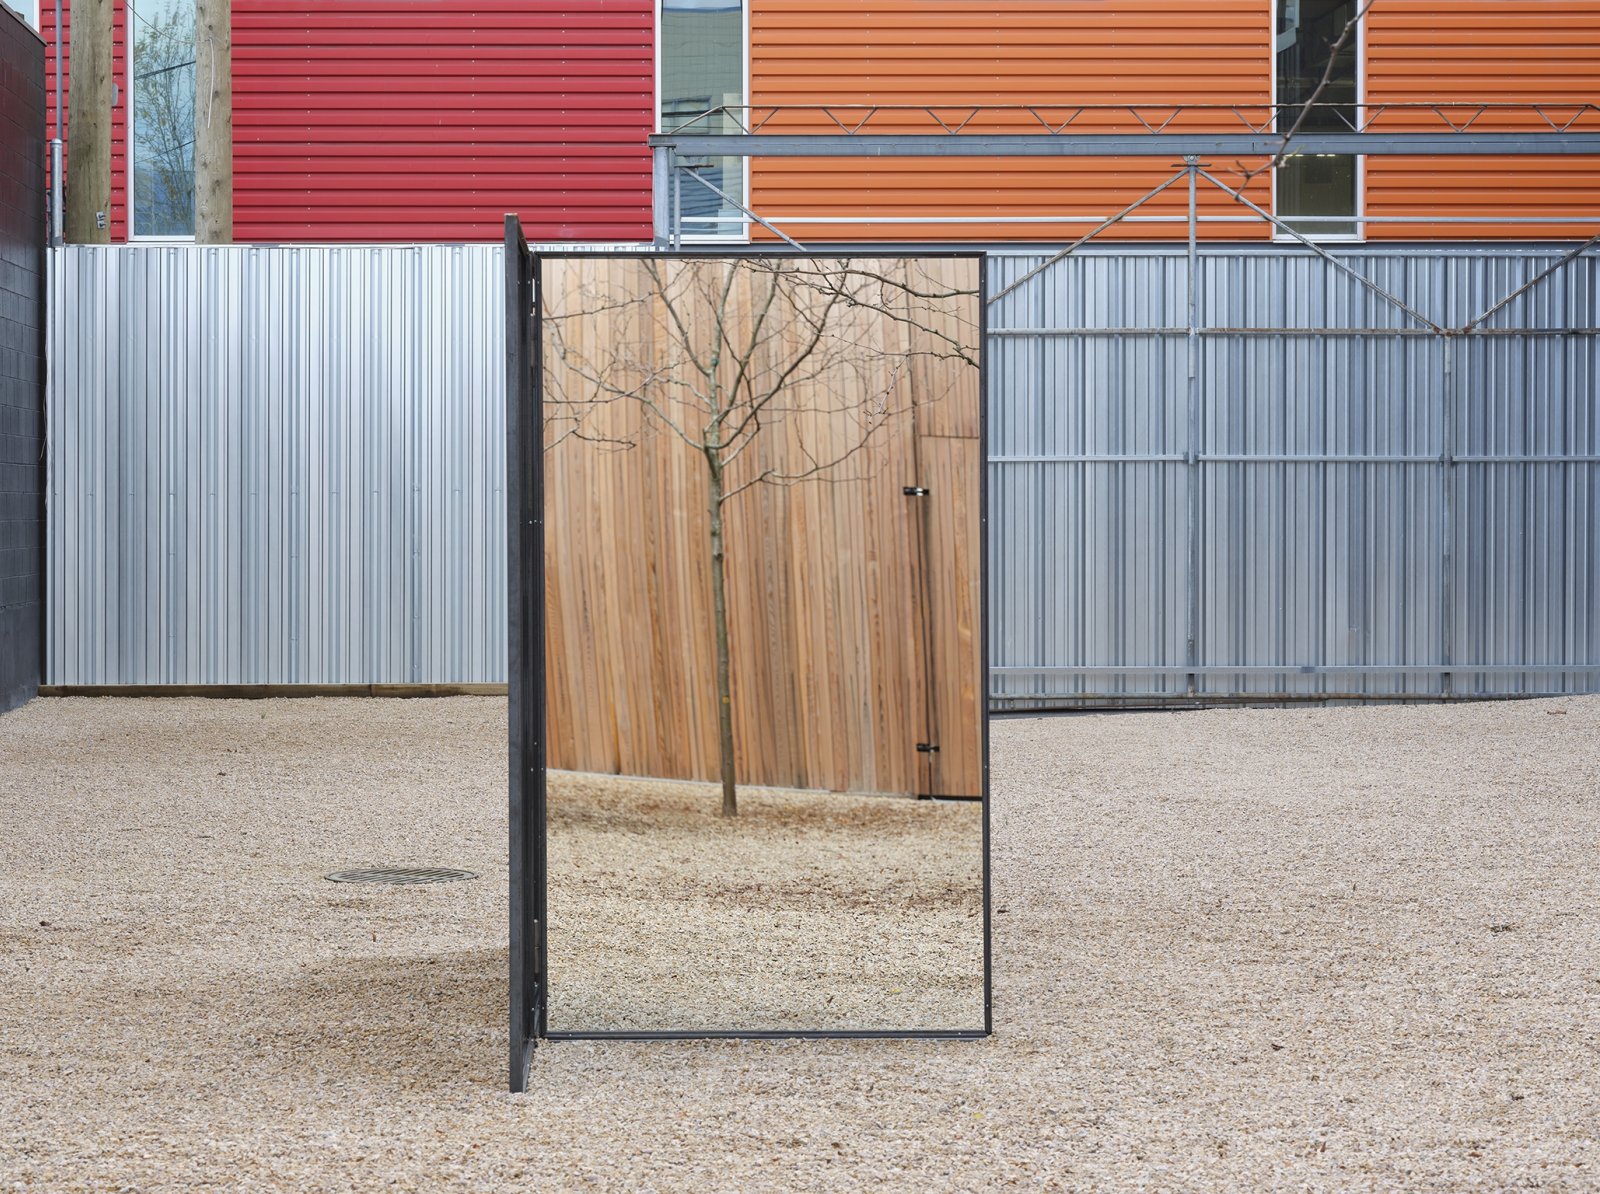 ​Abbas Akhavan, Trough, 2019, steel, mirrors, 84 x 150 x 48 in. (213 x 380 x 122 cm) by Abbas Akhavan